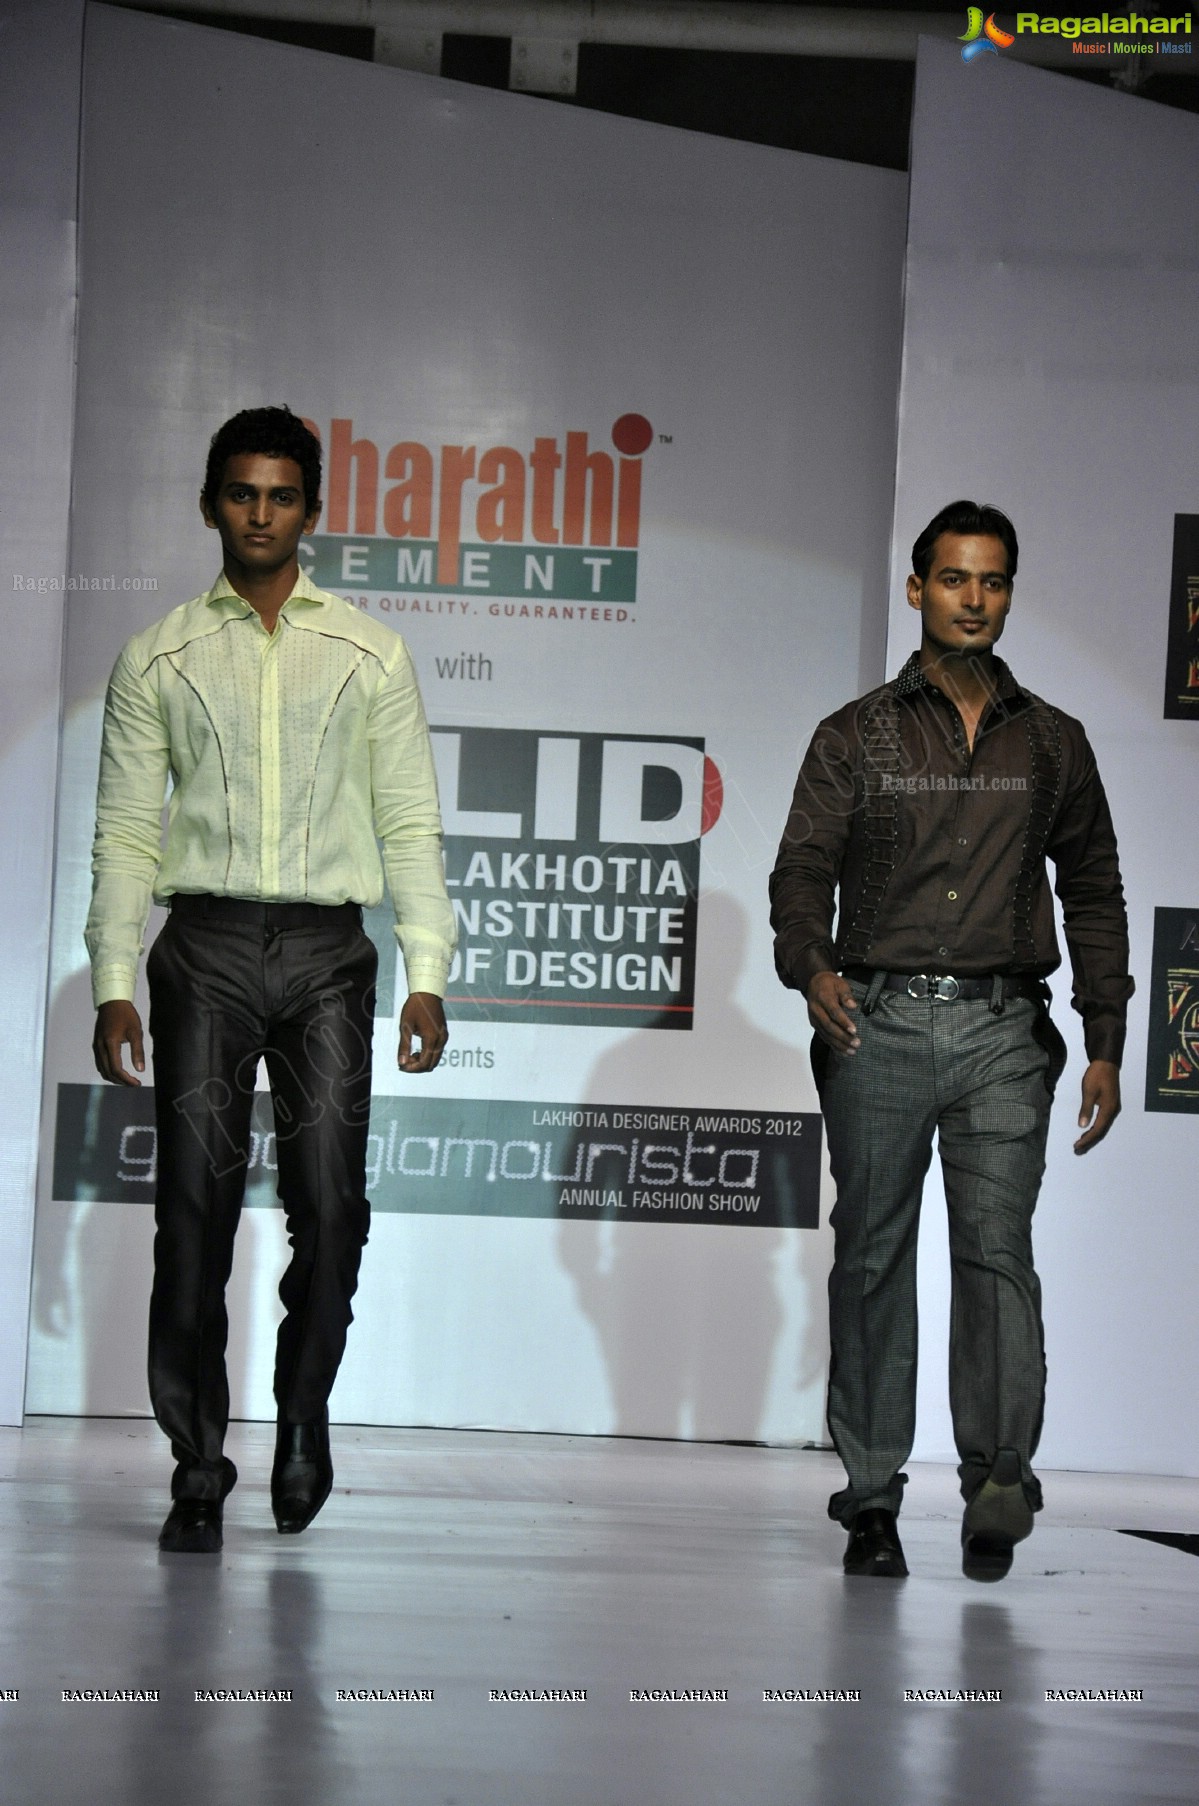 Lakhotia Designers Awards 2012